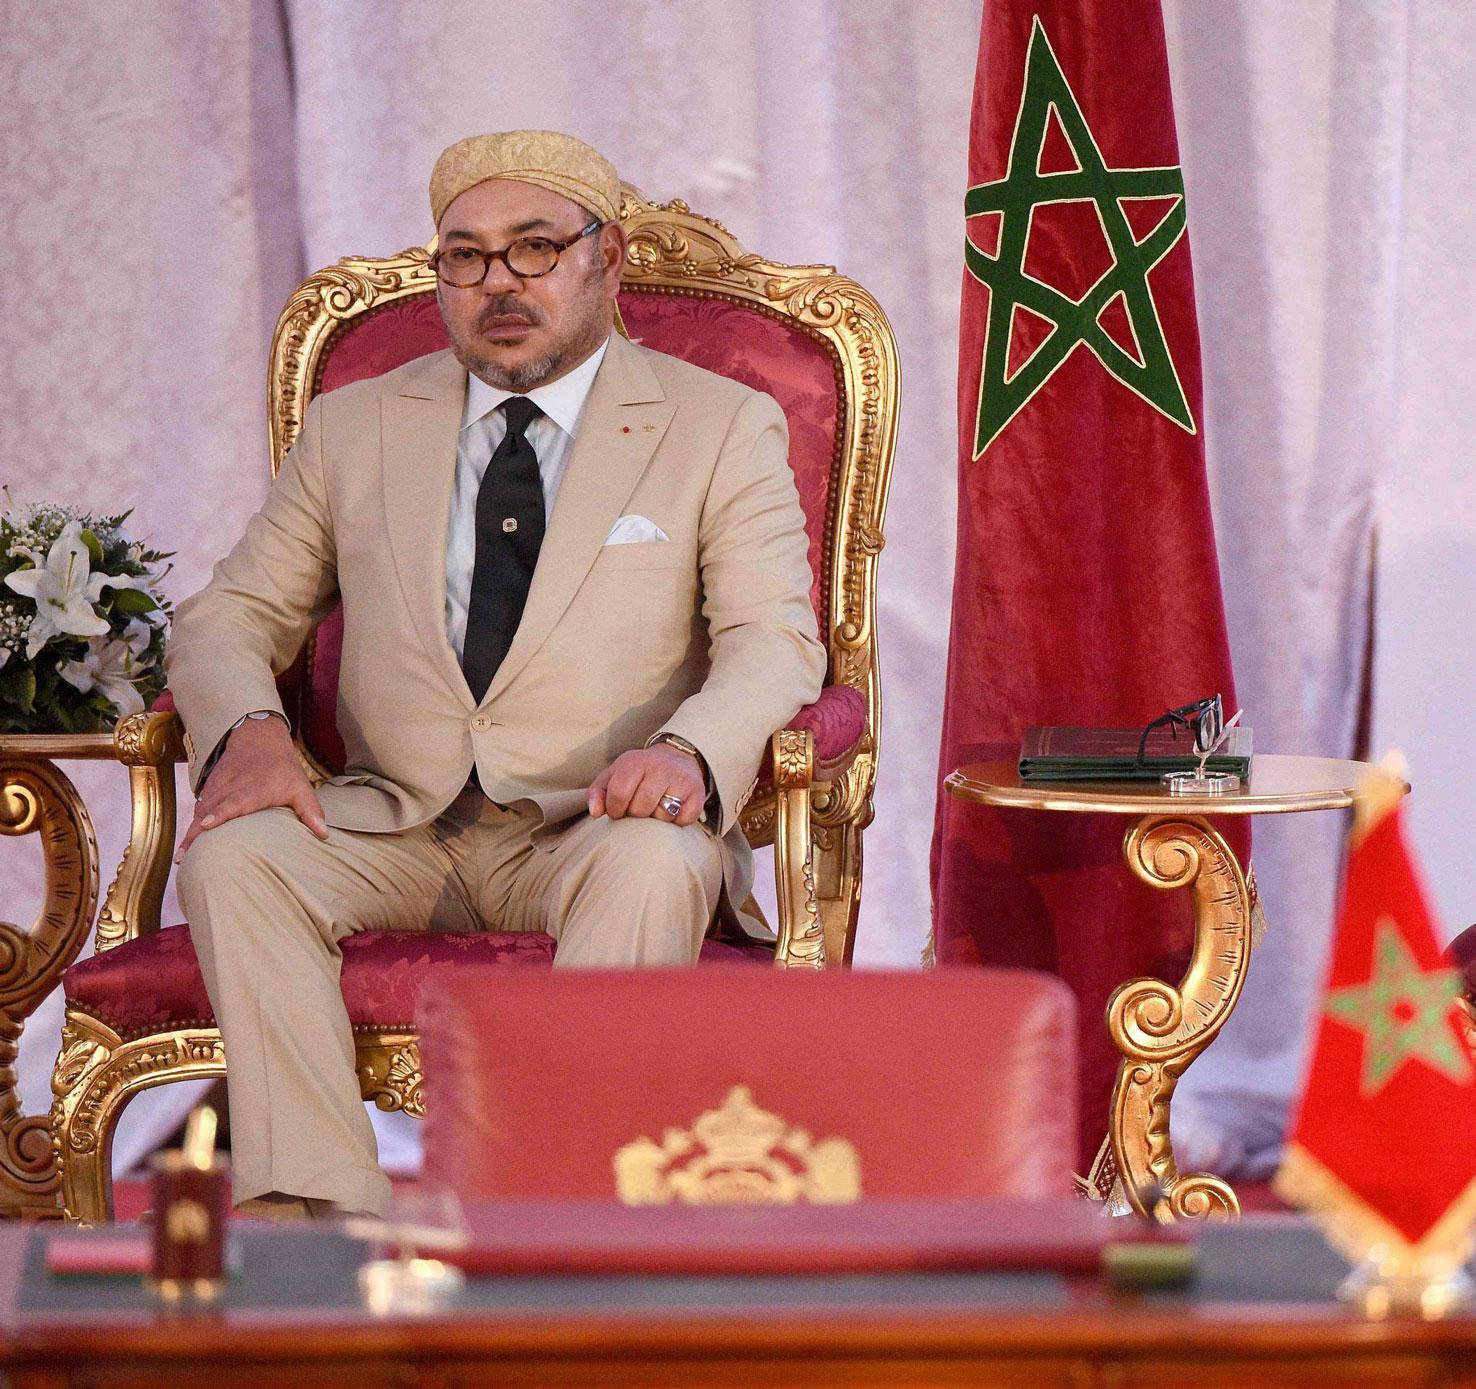 العاهل المغربي اصدر أمرا بتسوية ملف القاصرين الموجودين بشكل غير نظامي في دول أوروبية